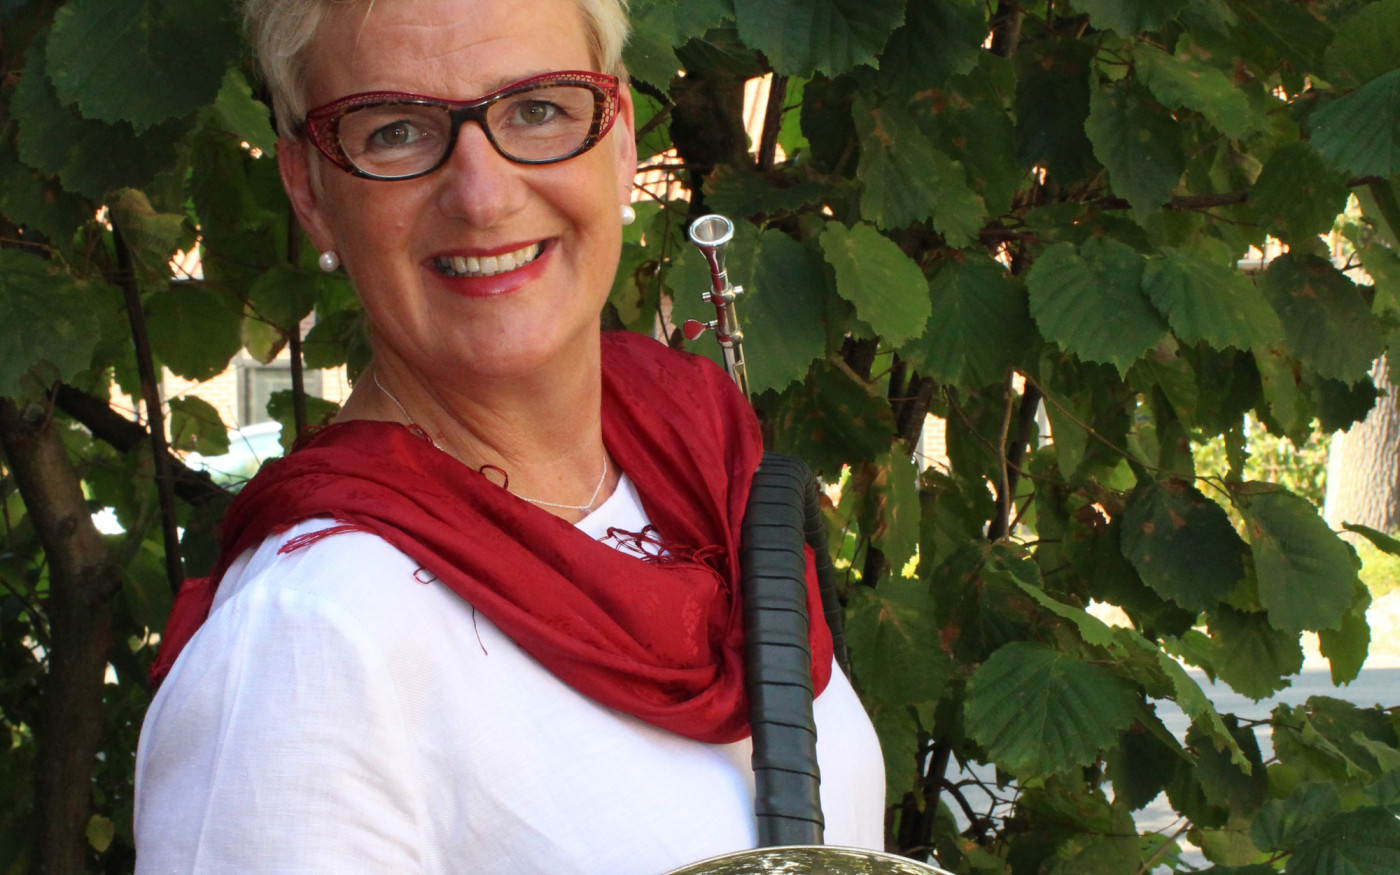 Raclette-Zeit ist wie Musik in meinen Ohren: Andrea Kyszkiewicz freut sich auf die Schlemmer-Events im Landcafé Neubokel